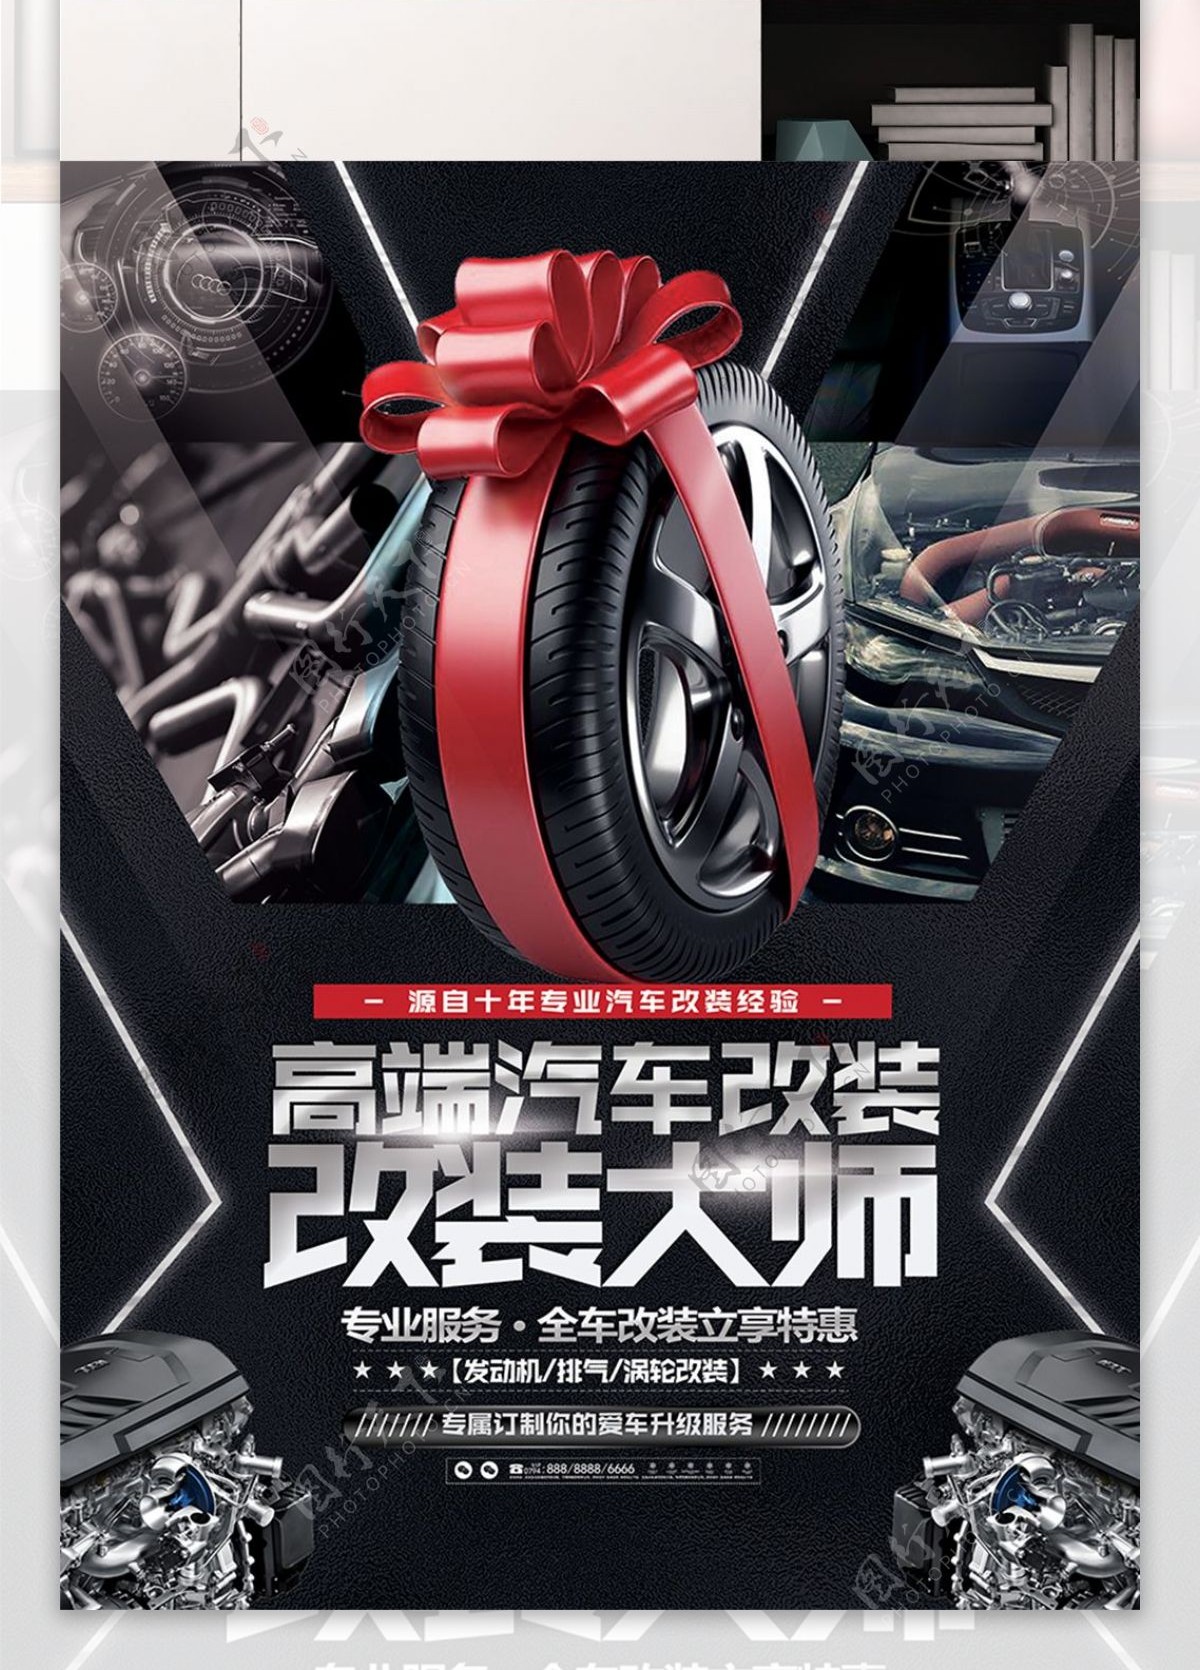 酷炫简约汽车改装宣传促销海报展板